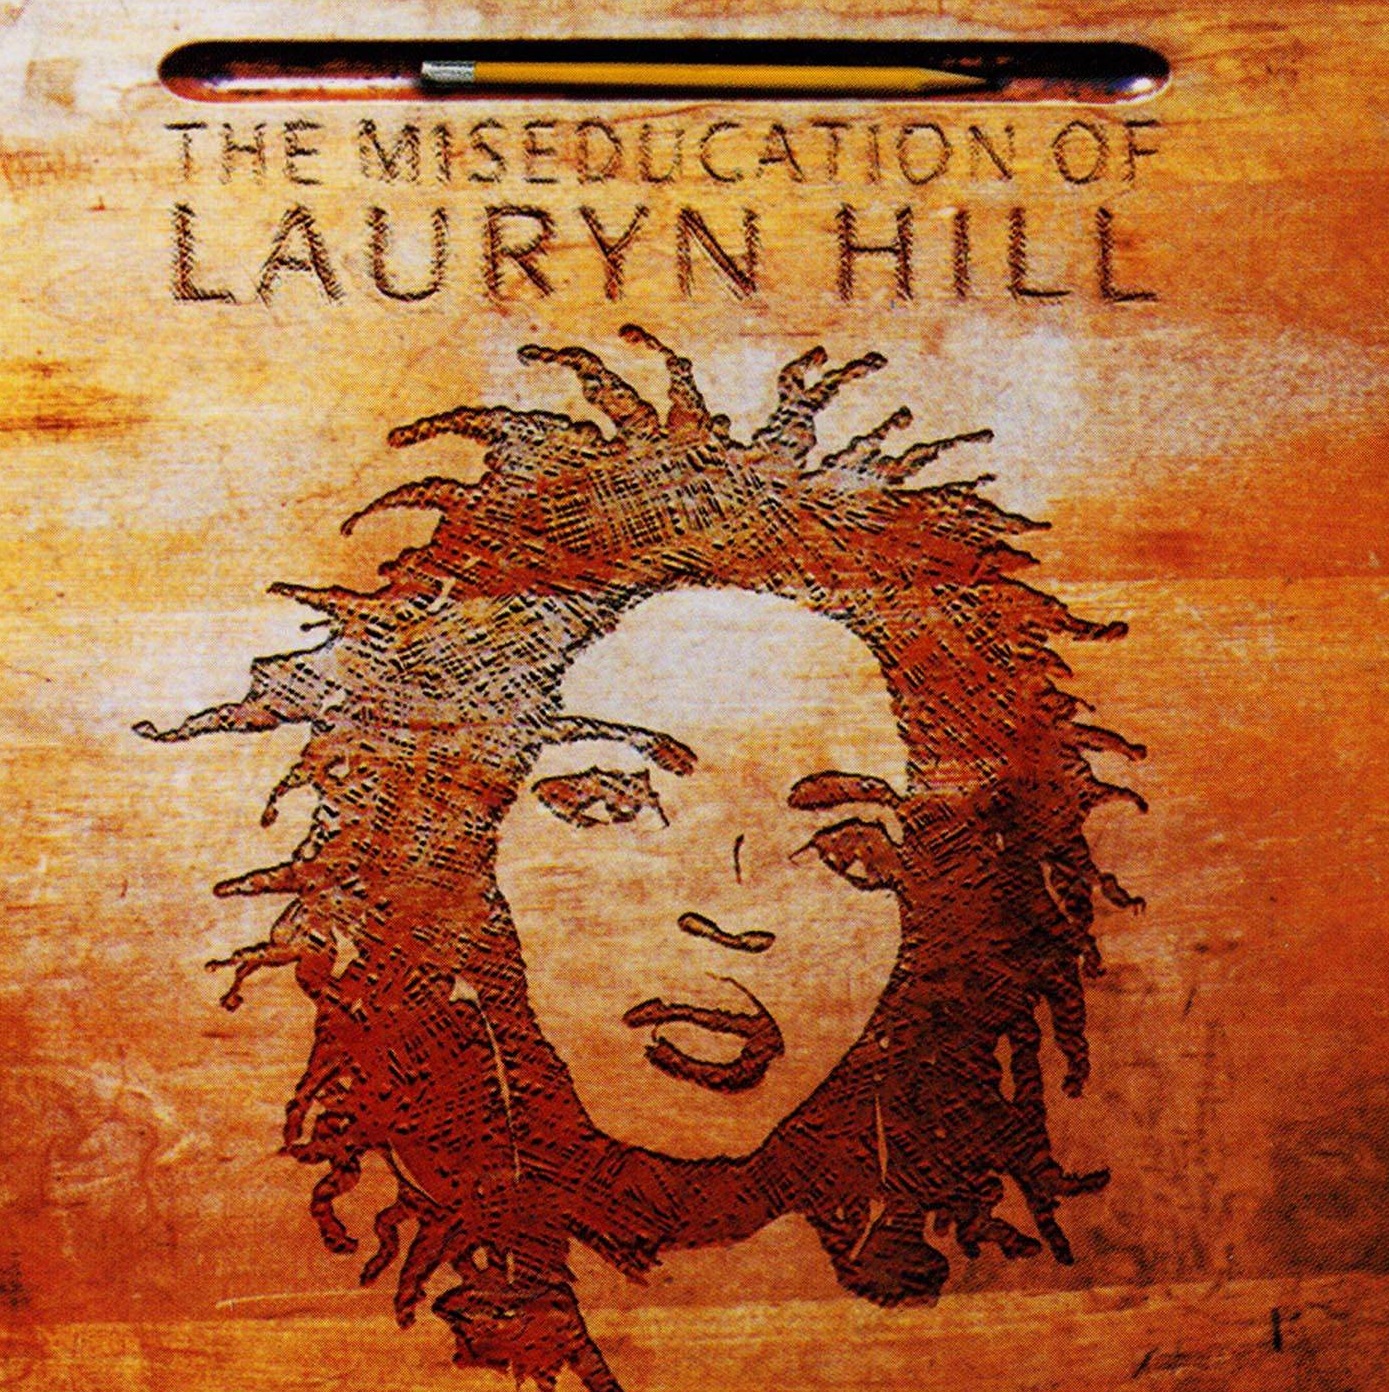 Miseducation of Lauryn hill